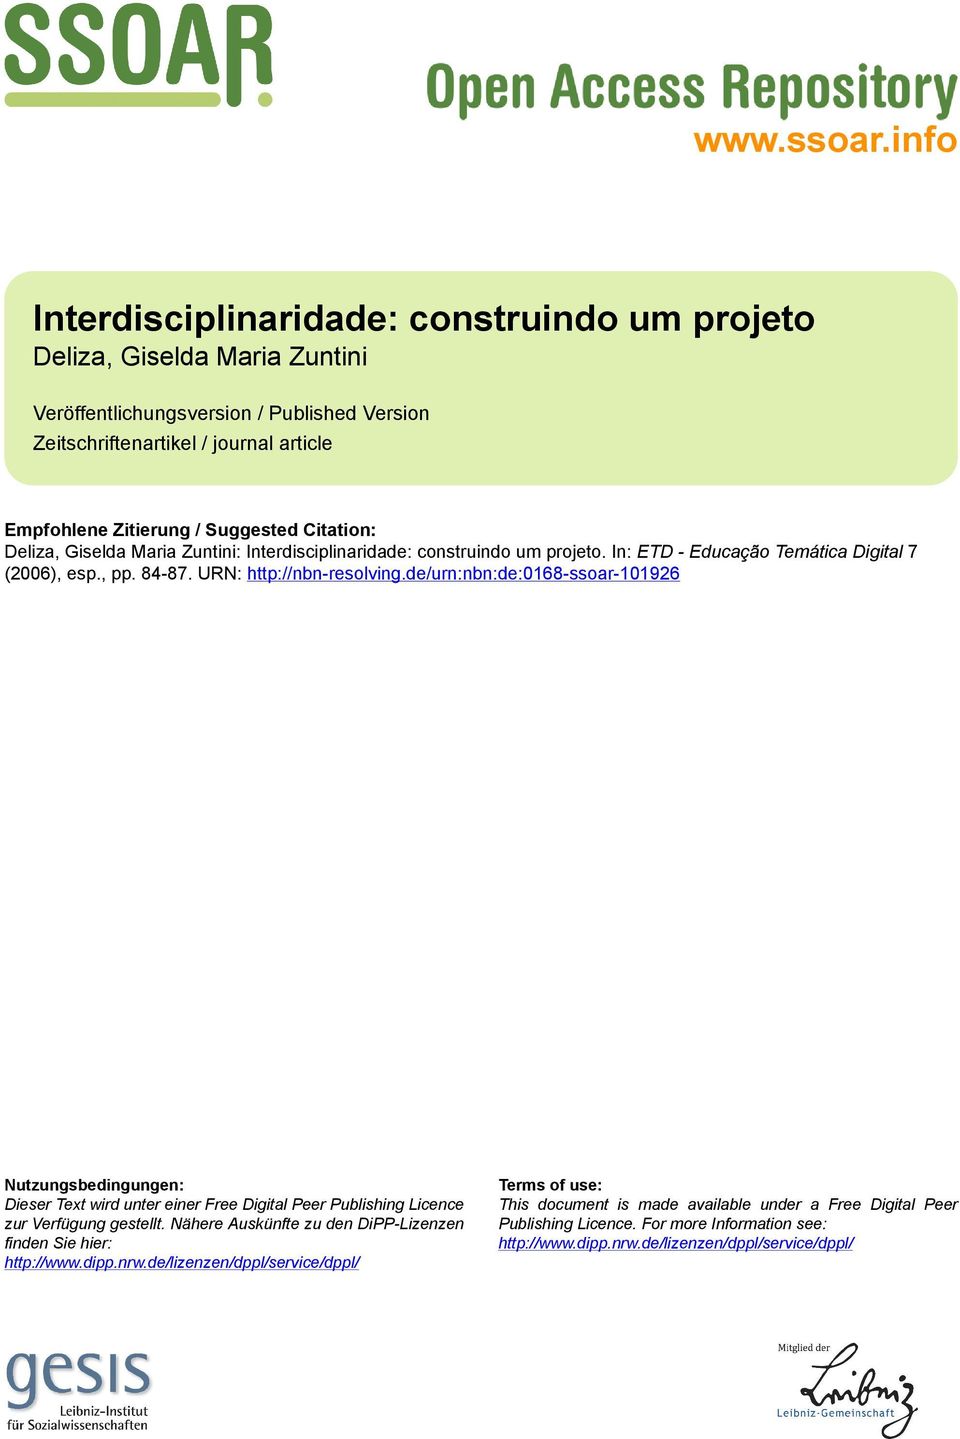 Citation: Deliza, Giselda Maria Zuntini: Interdisciplinaridade: construindo um projeto. In: ETD - Educação Temática Digital 7 (2006), esp., pp. 84-87. URN: http://nbn-resolving.